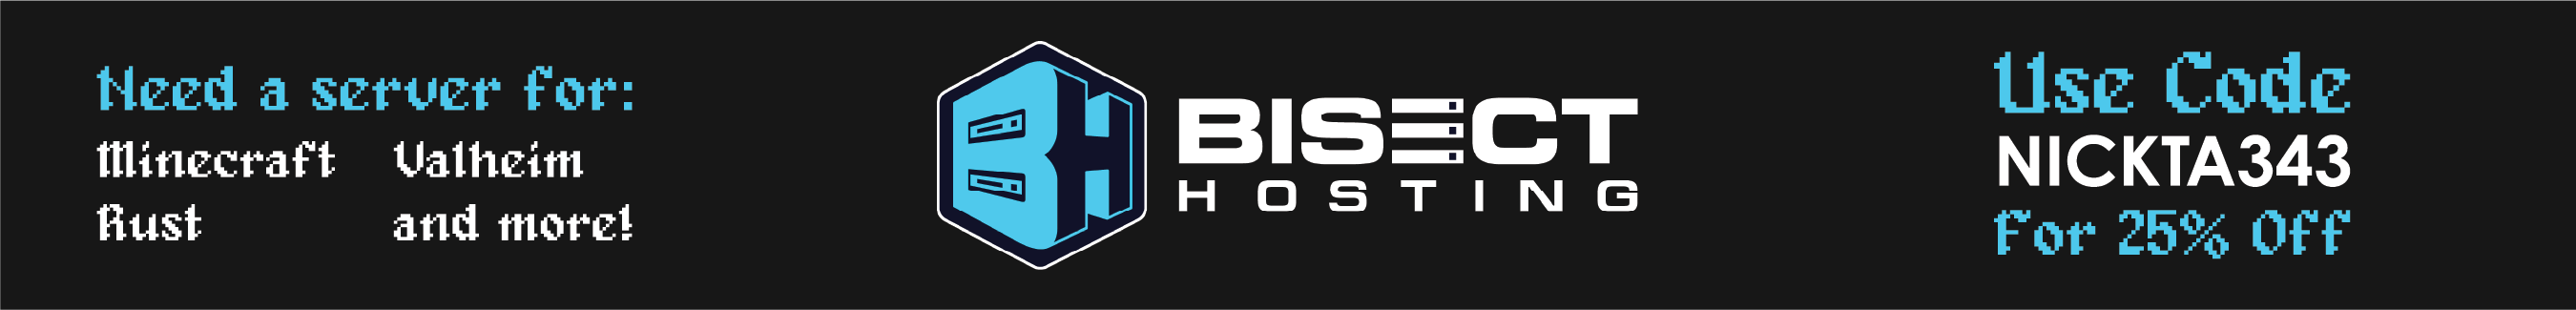 Bisect Hosting / Nickta343